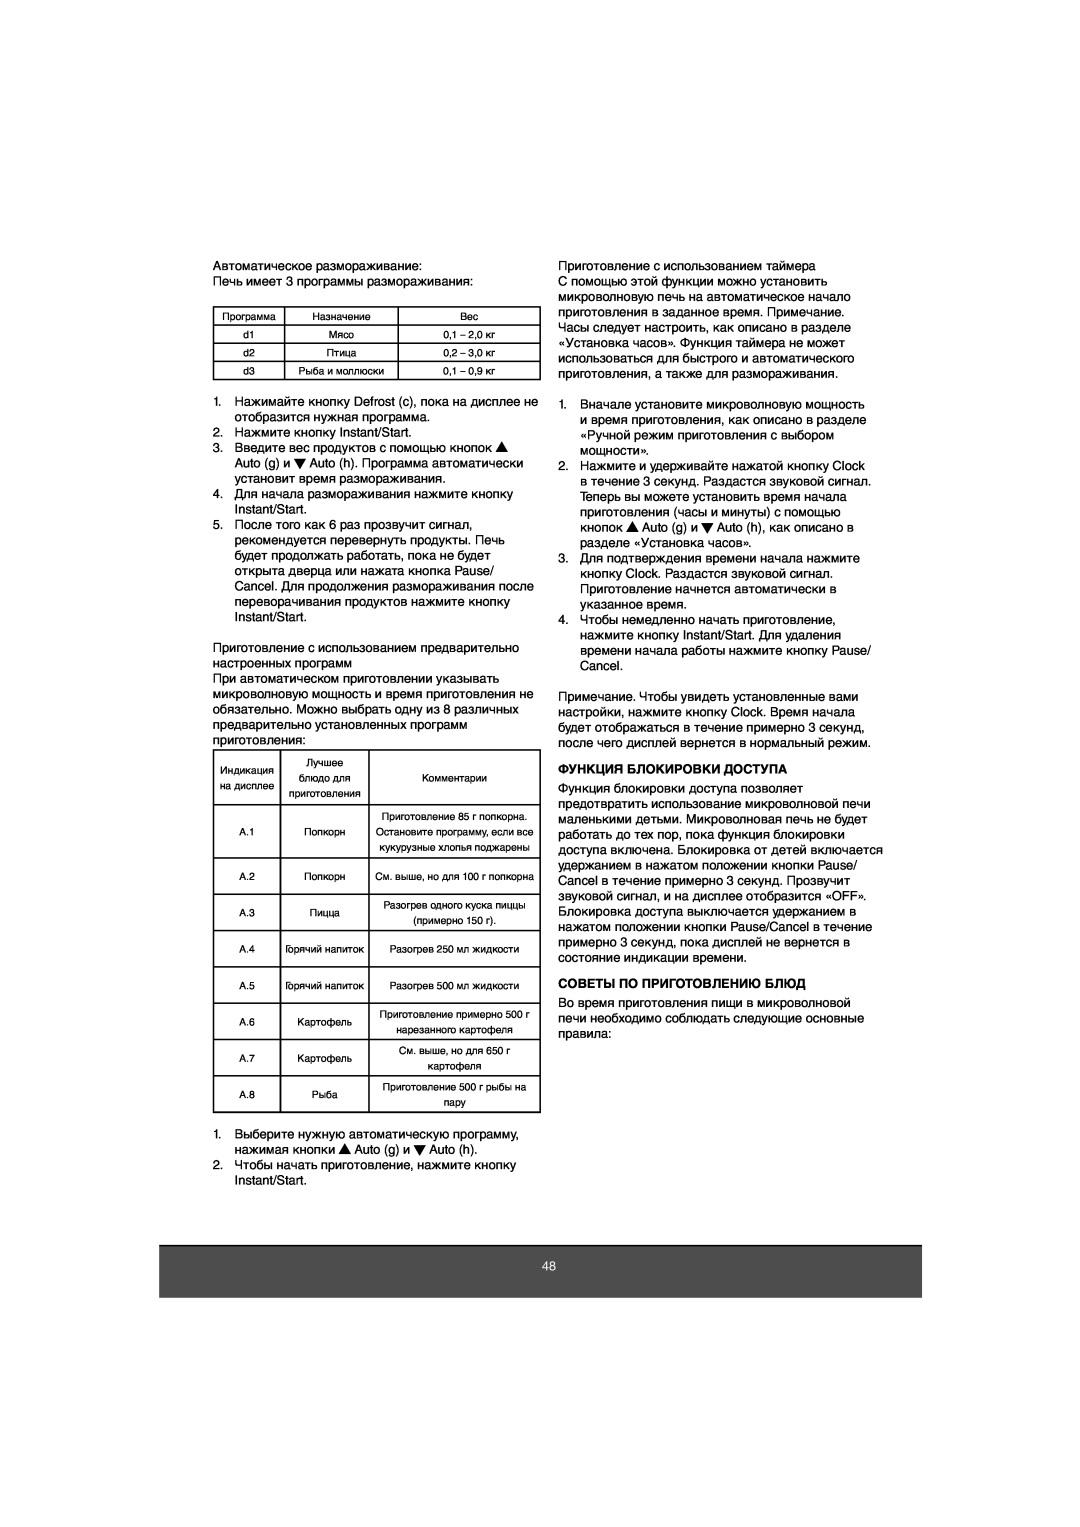 Melissa 653-081 manual Функция Блокировки Доступа, Советы По Приготовлению Блюд 